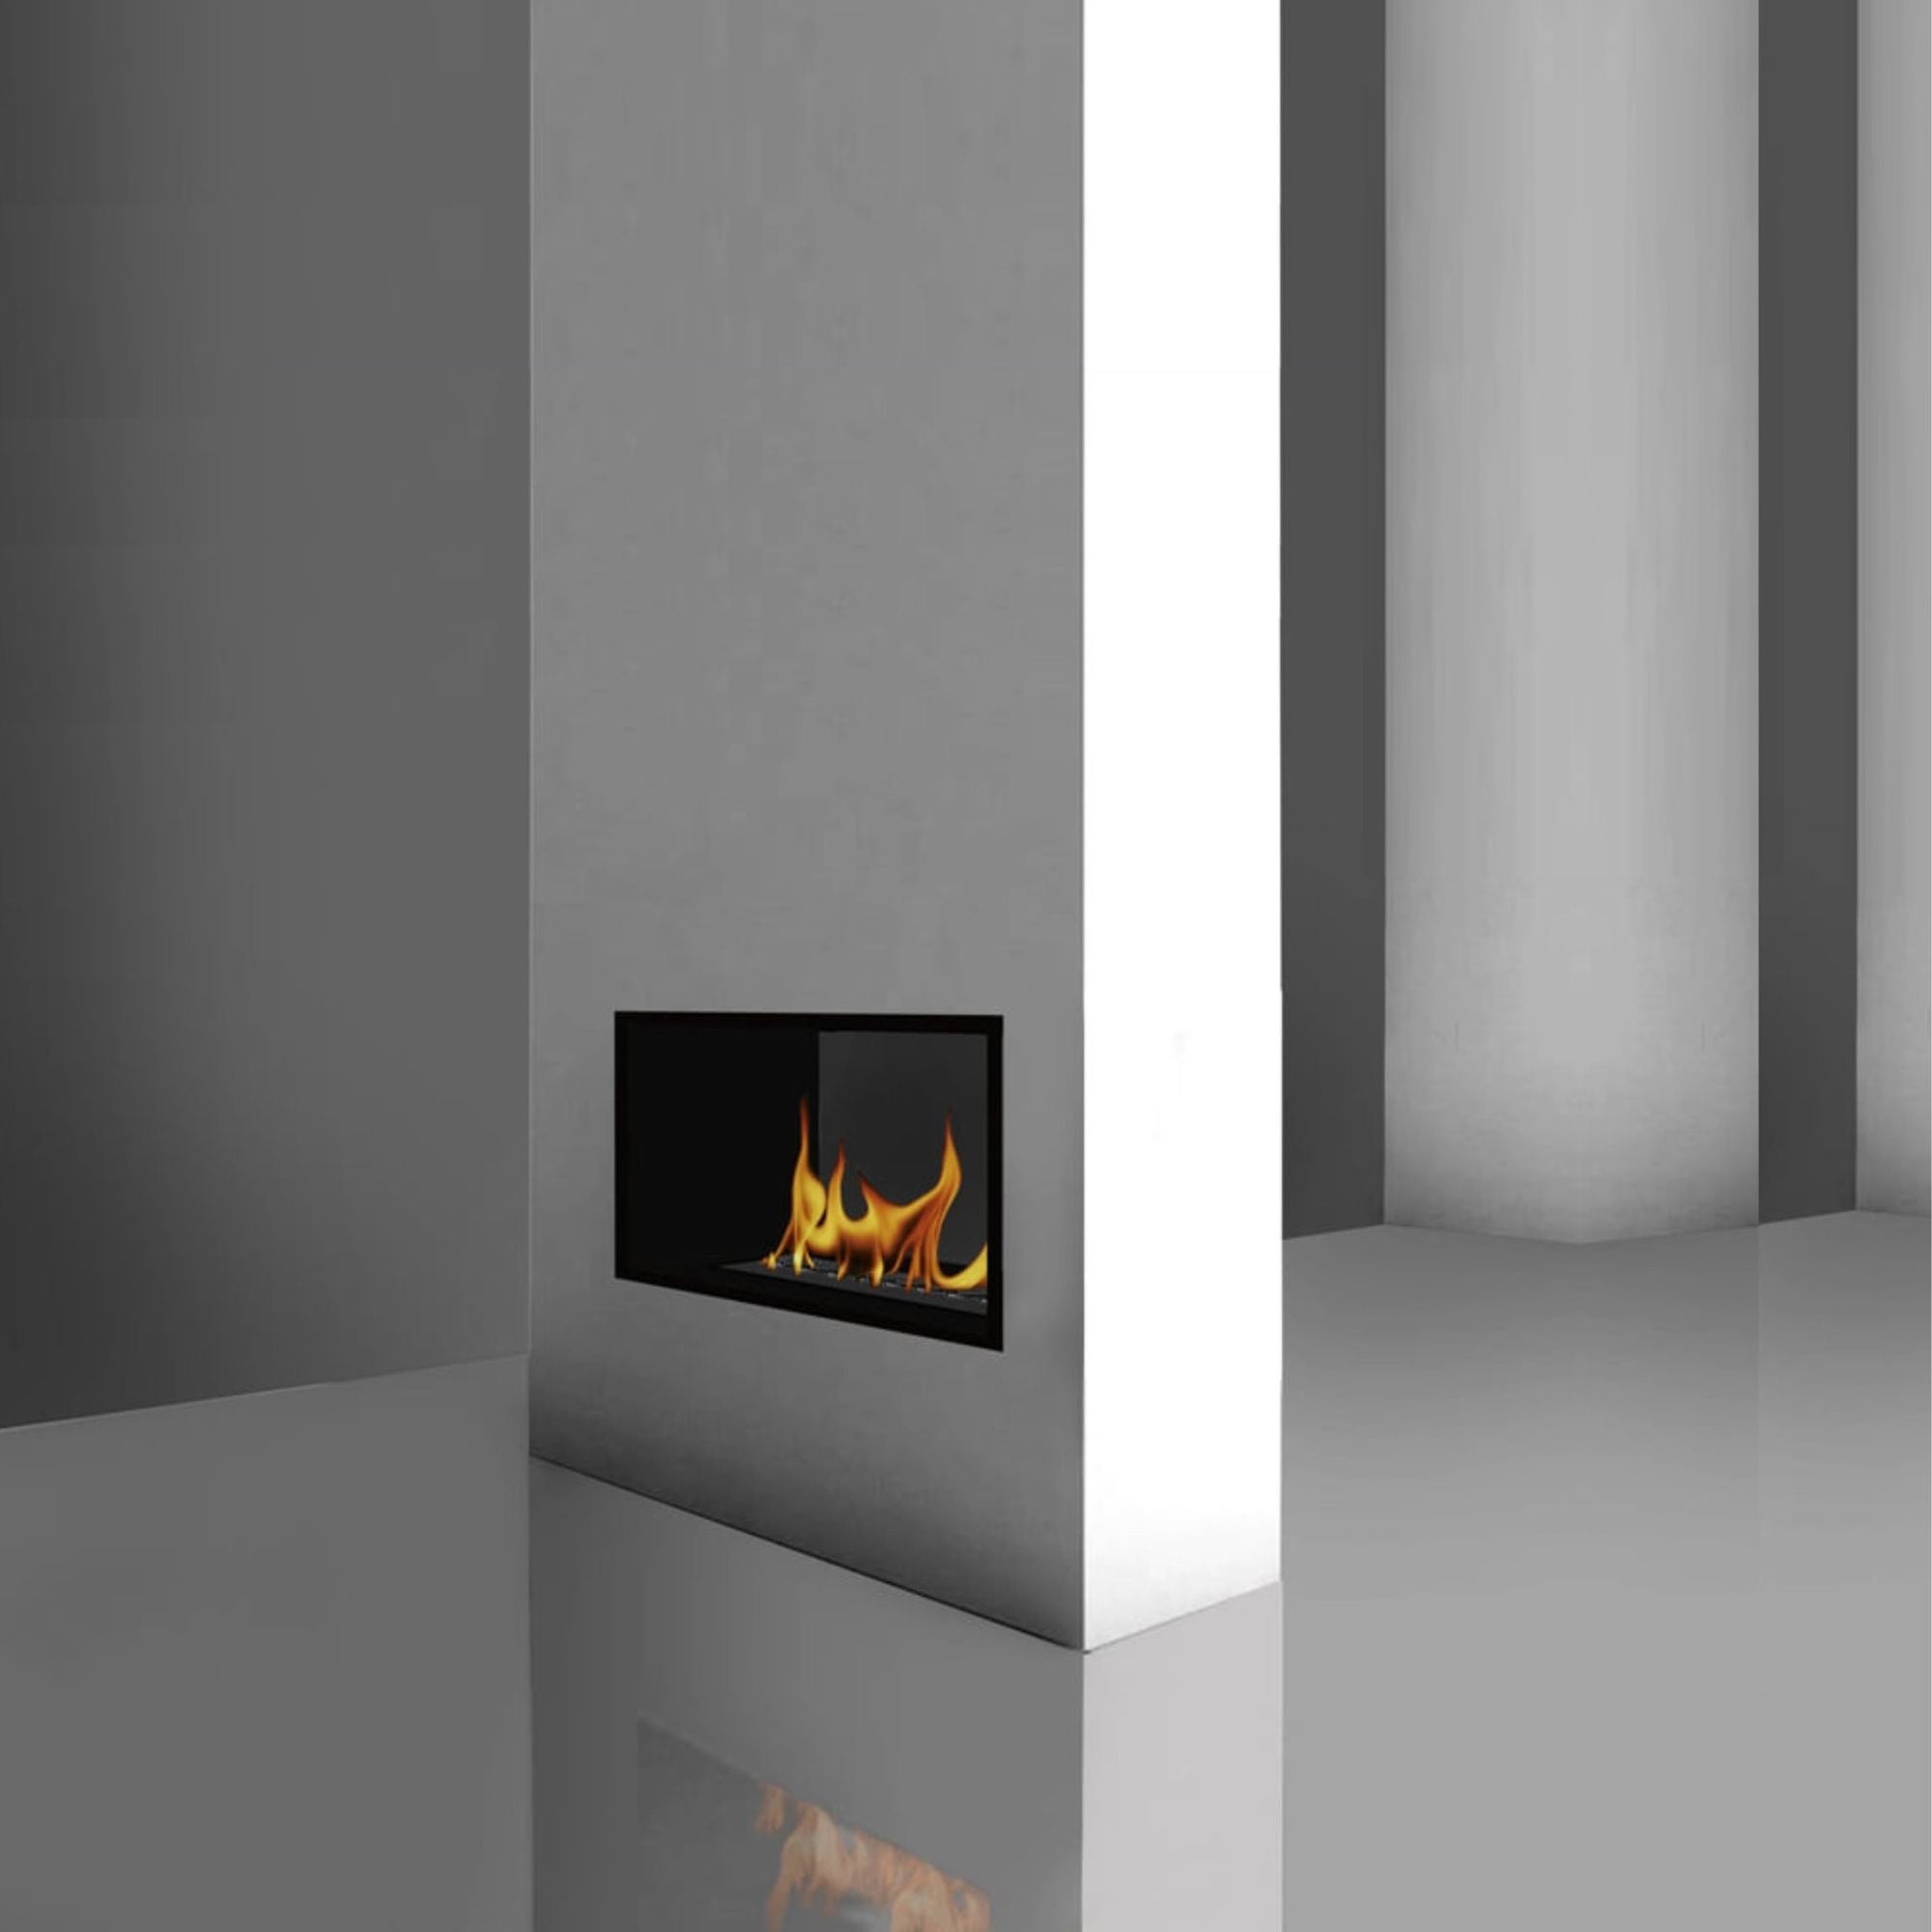 Villamar See-Through Built-in Fireplace 768 MM